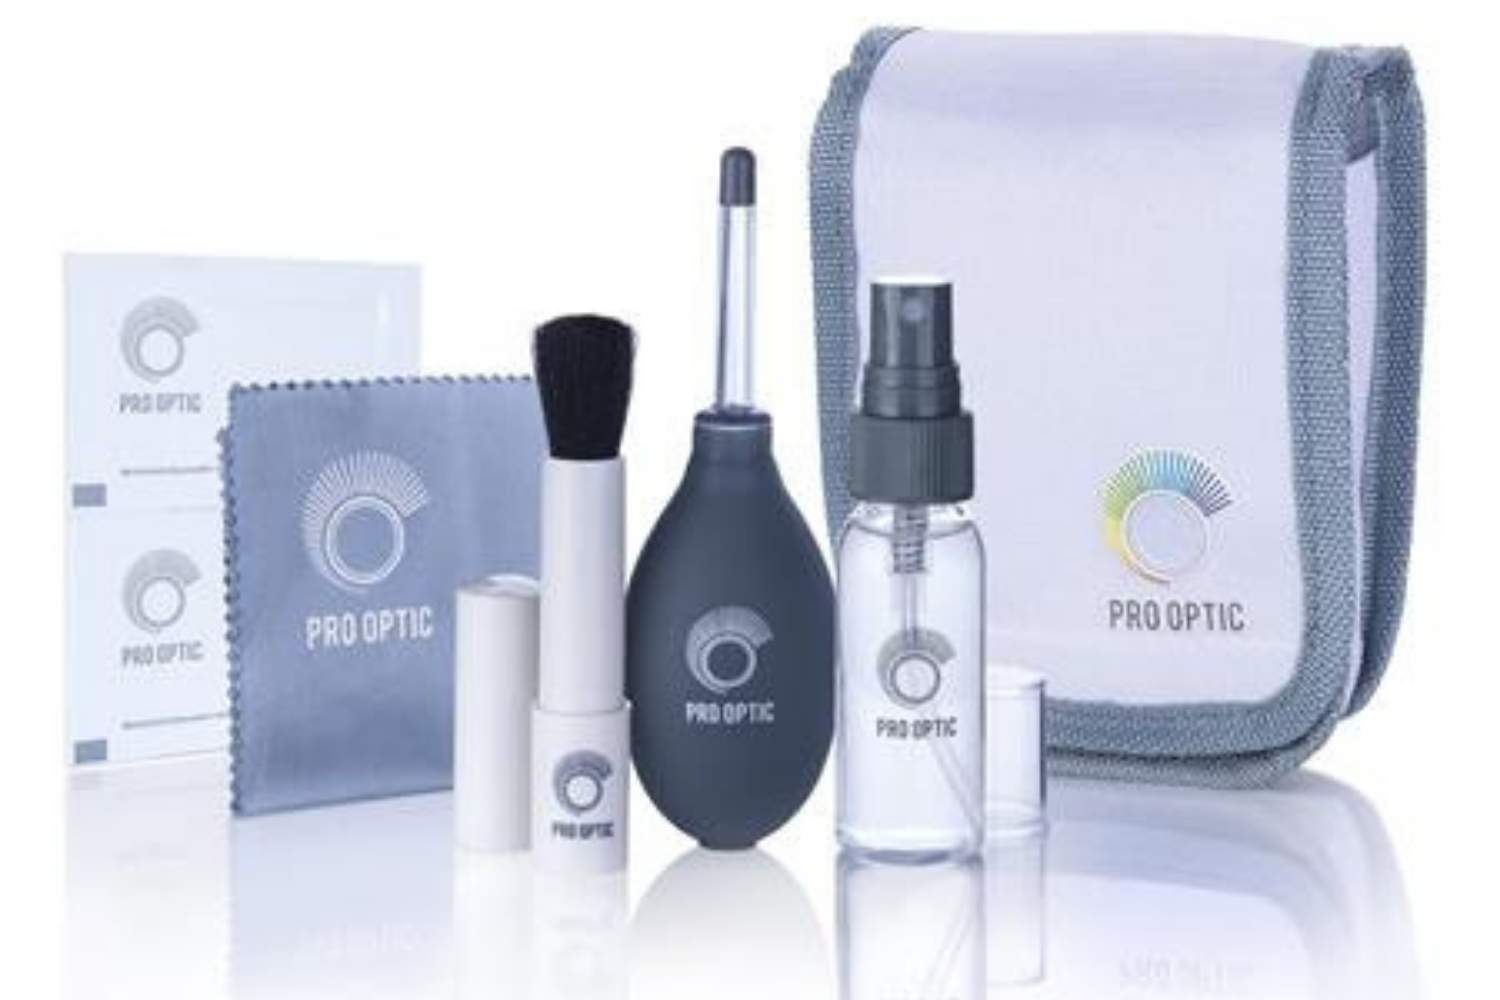 ProOPTIC Complete Optics Care Kit